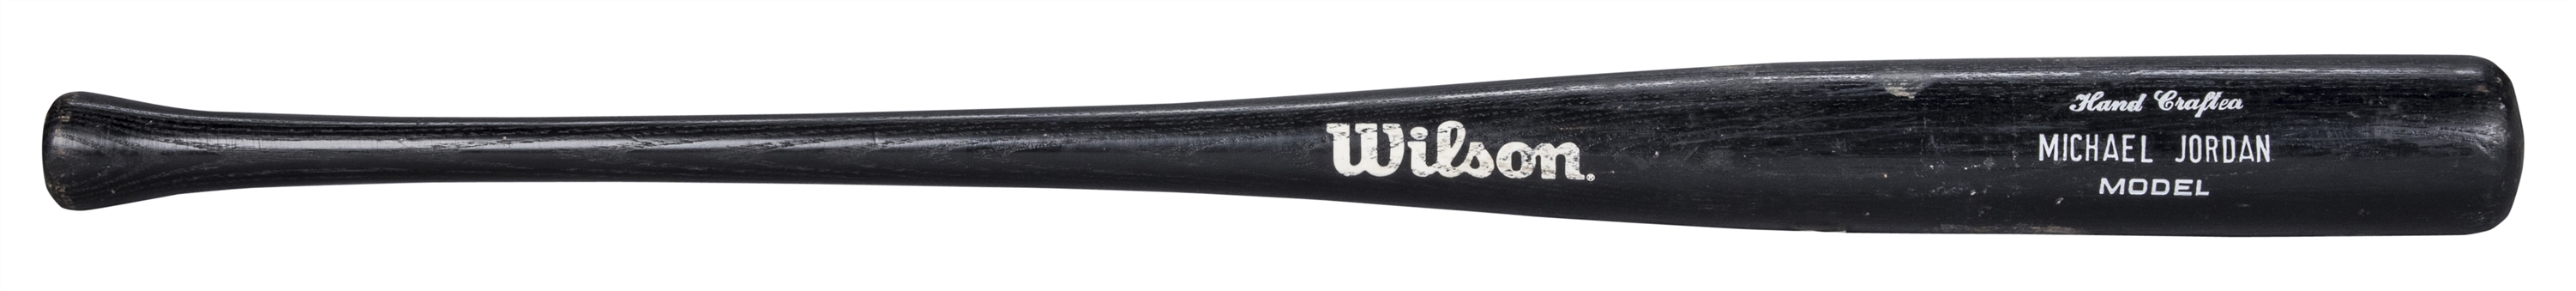 1994 Michael Jordan Game Used Wilson WC209 Model Bat (PSA/DNA)